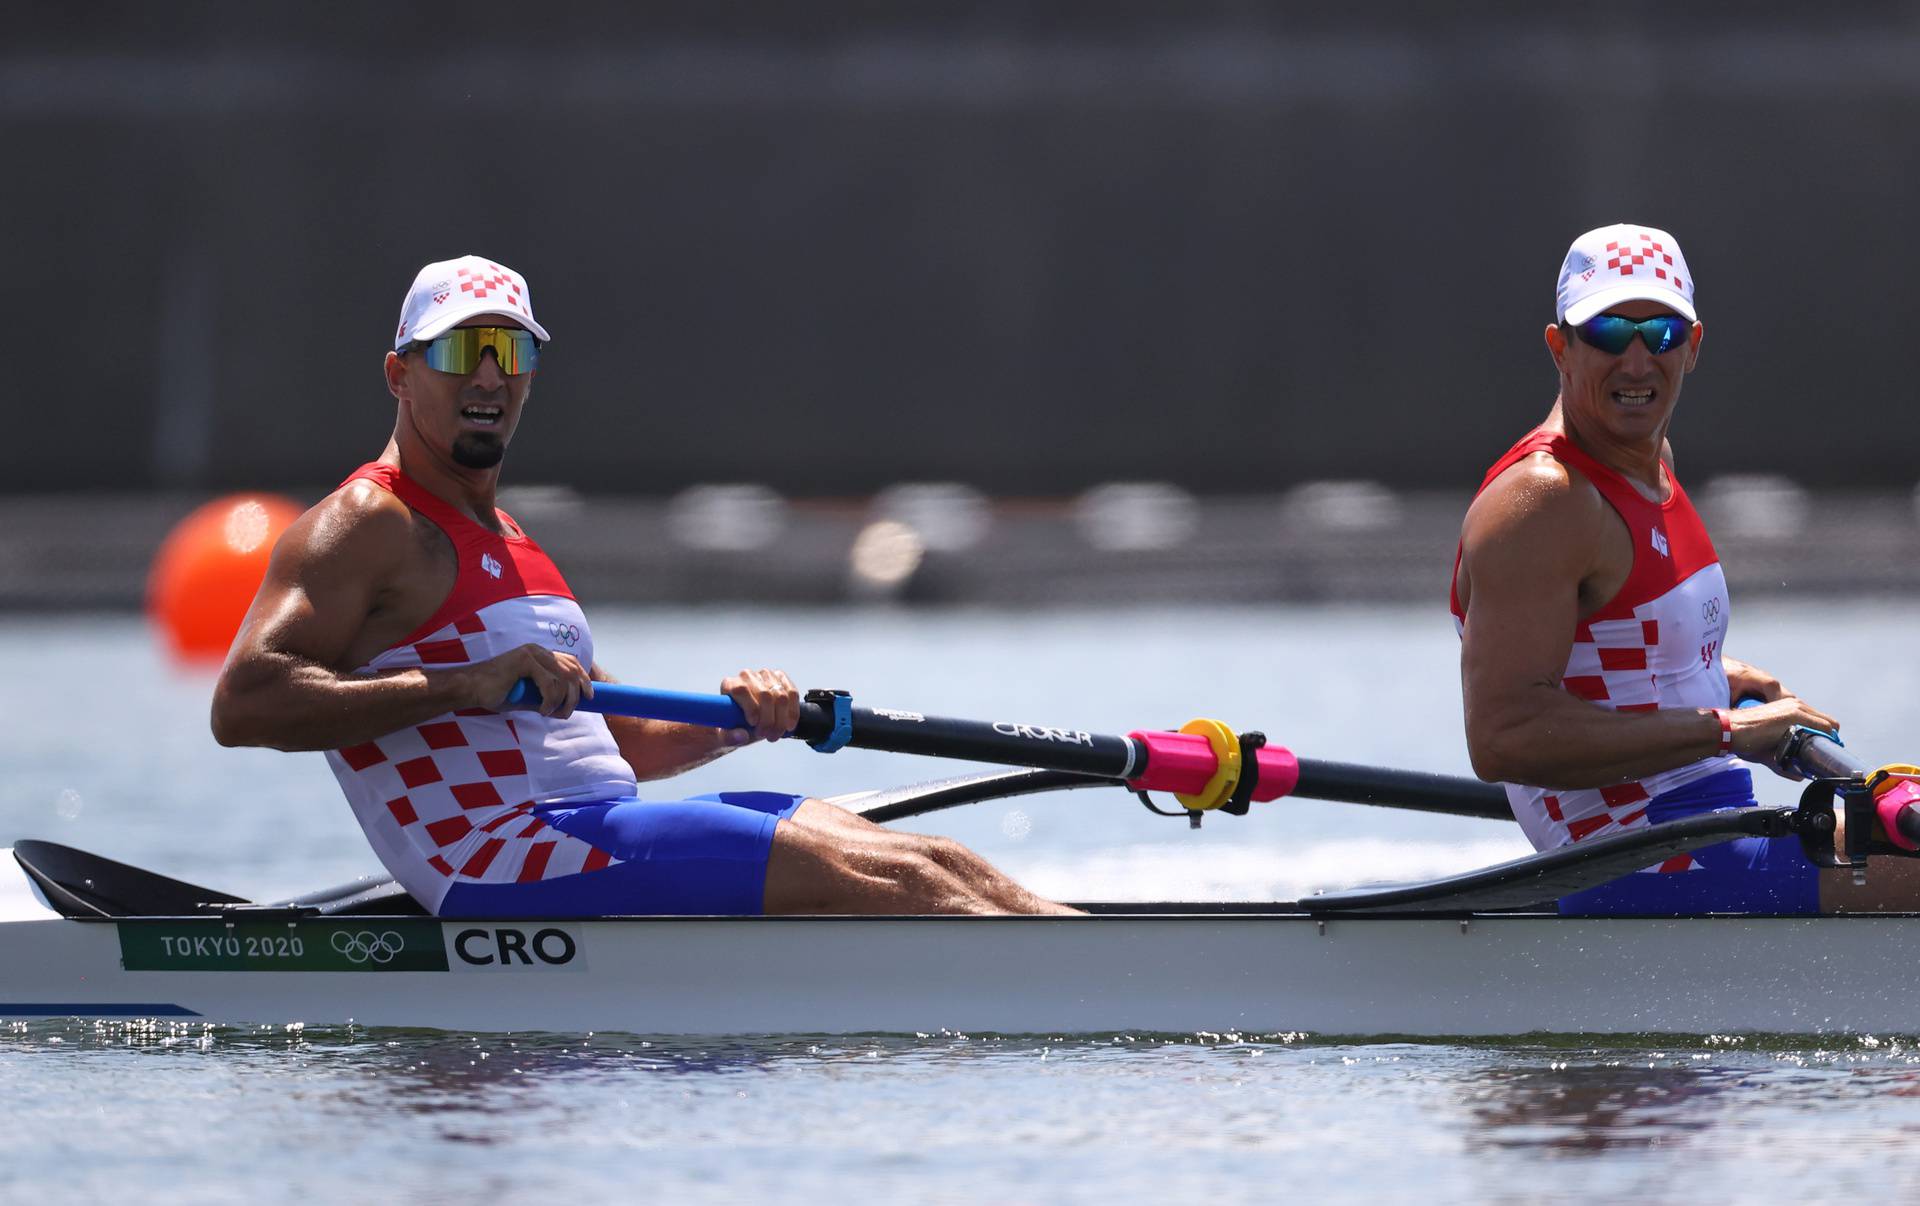 Rowing - Men's Pair - Heats